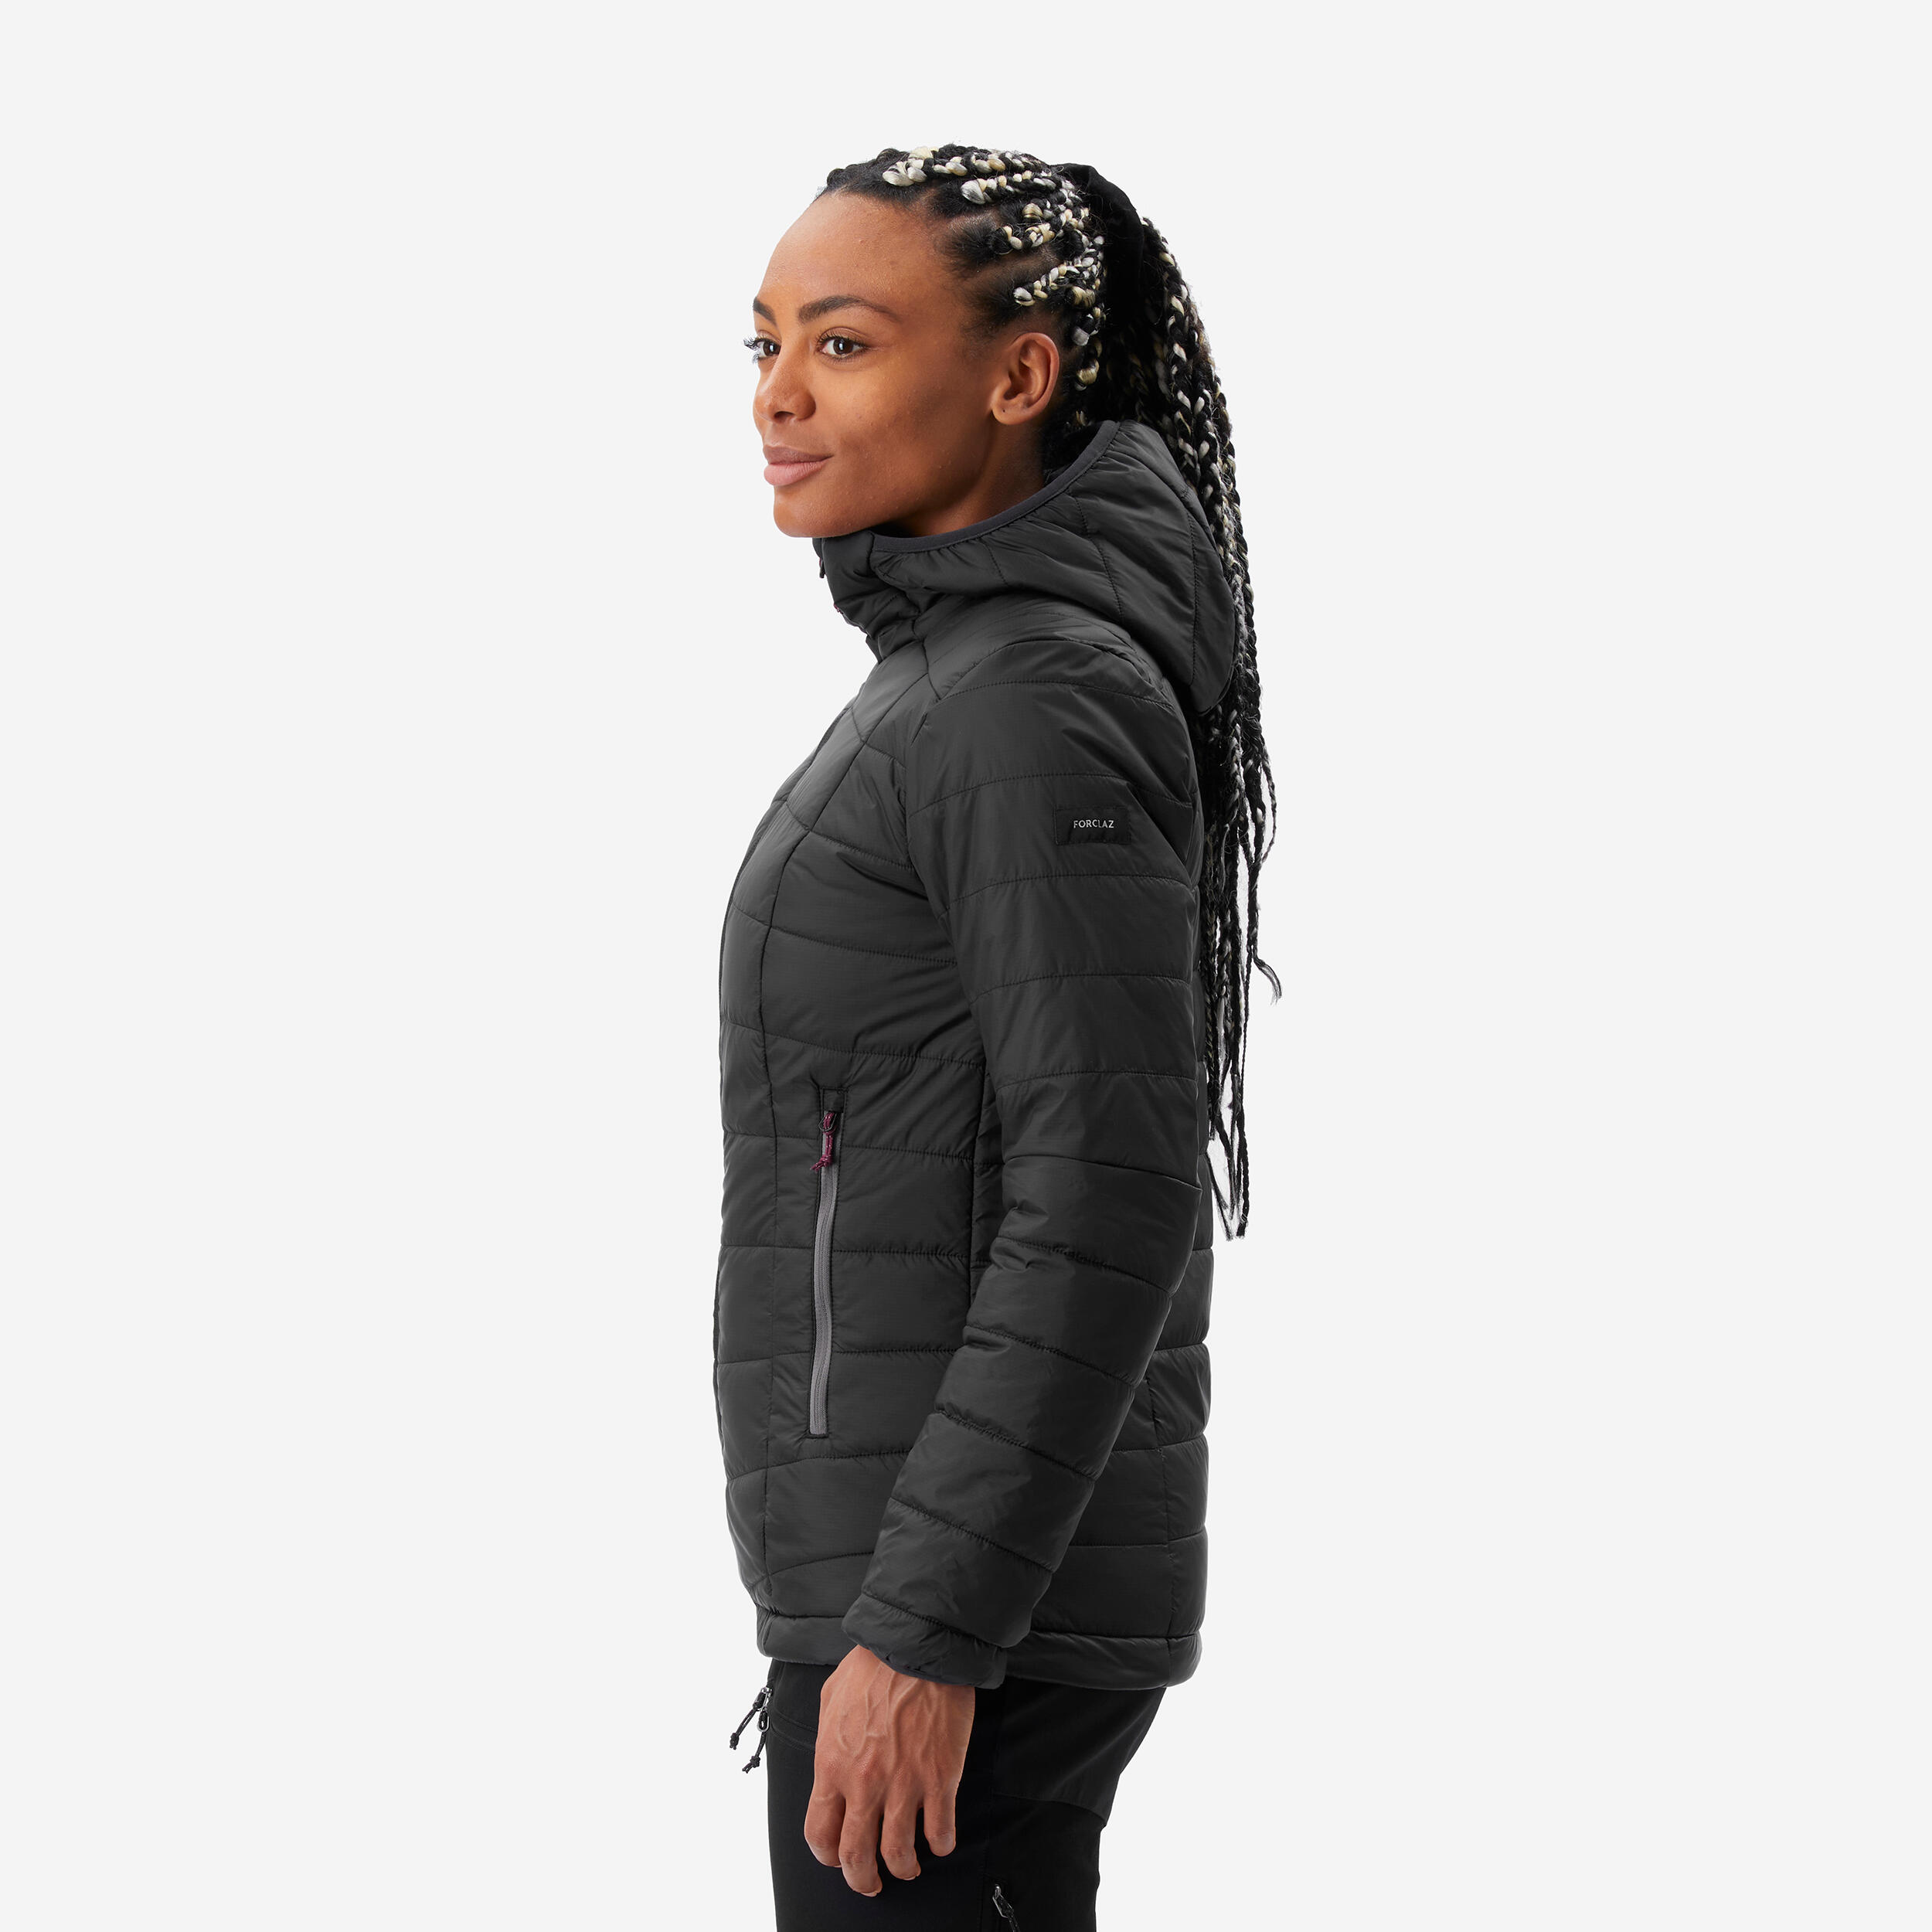 Women’s Padded Winter Jacket – MT 100 Black - FORCLAZ